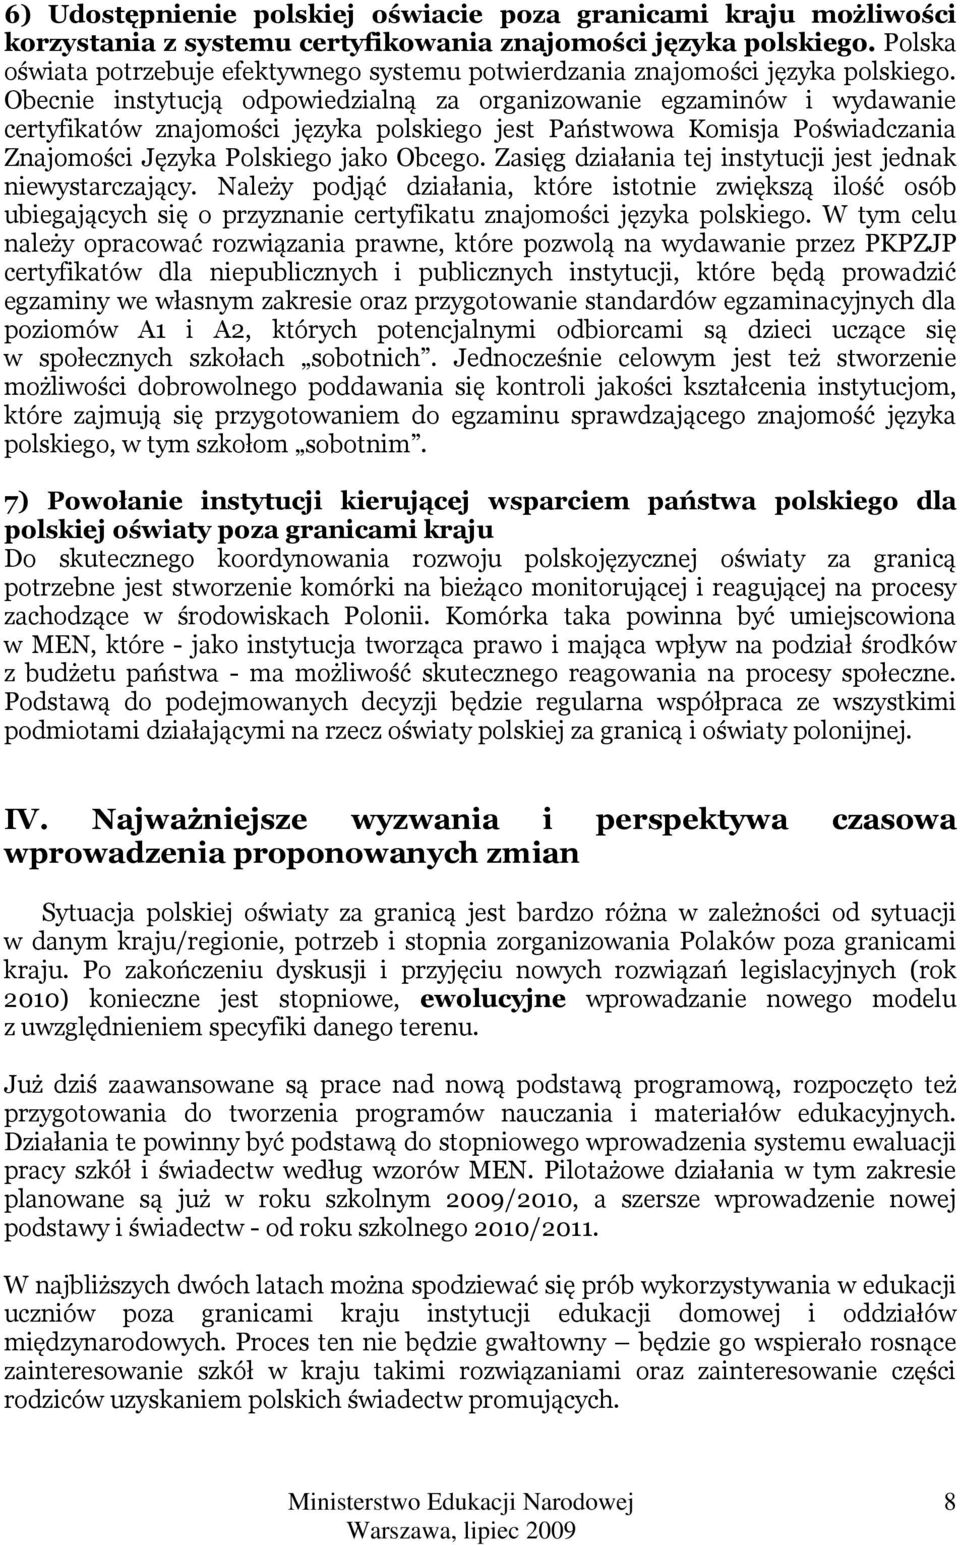 Obecnie instytucją odpowiedzialną za organizowanie egzaminów i wydawanie certyfikatów znajomości języka polskiego jest Państwowa Komisja Poświadczania Znajomości Języka Polskiego jako Obcego.